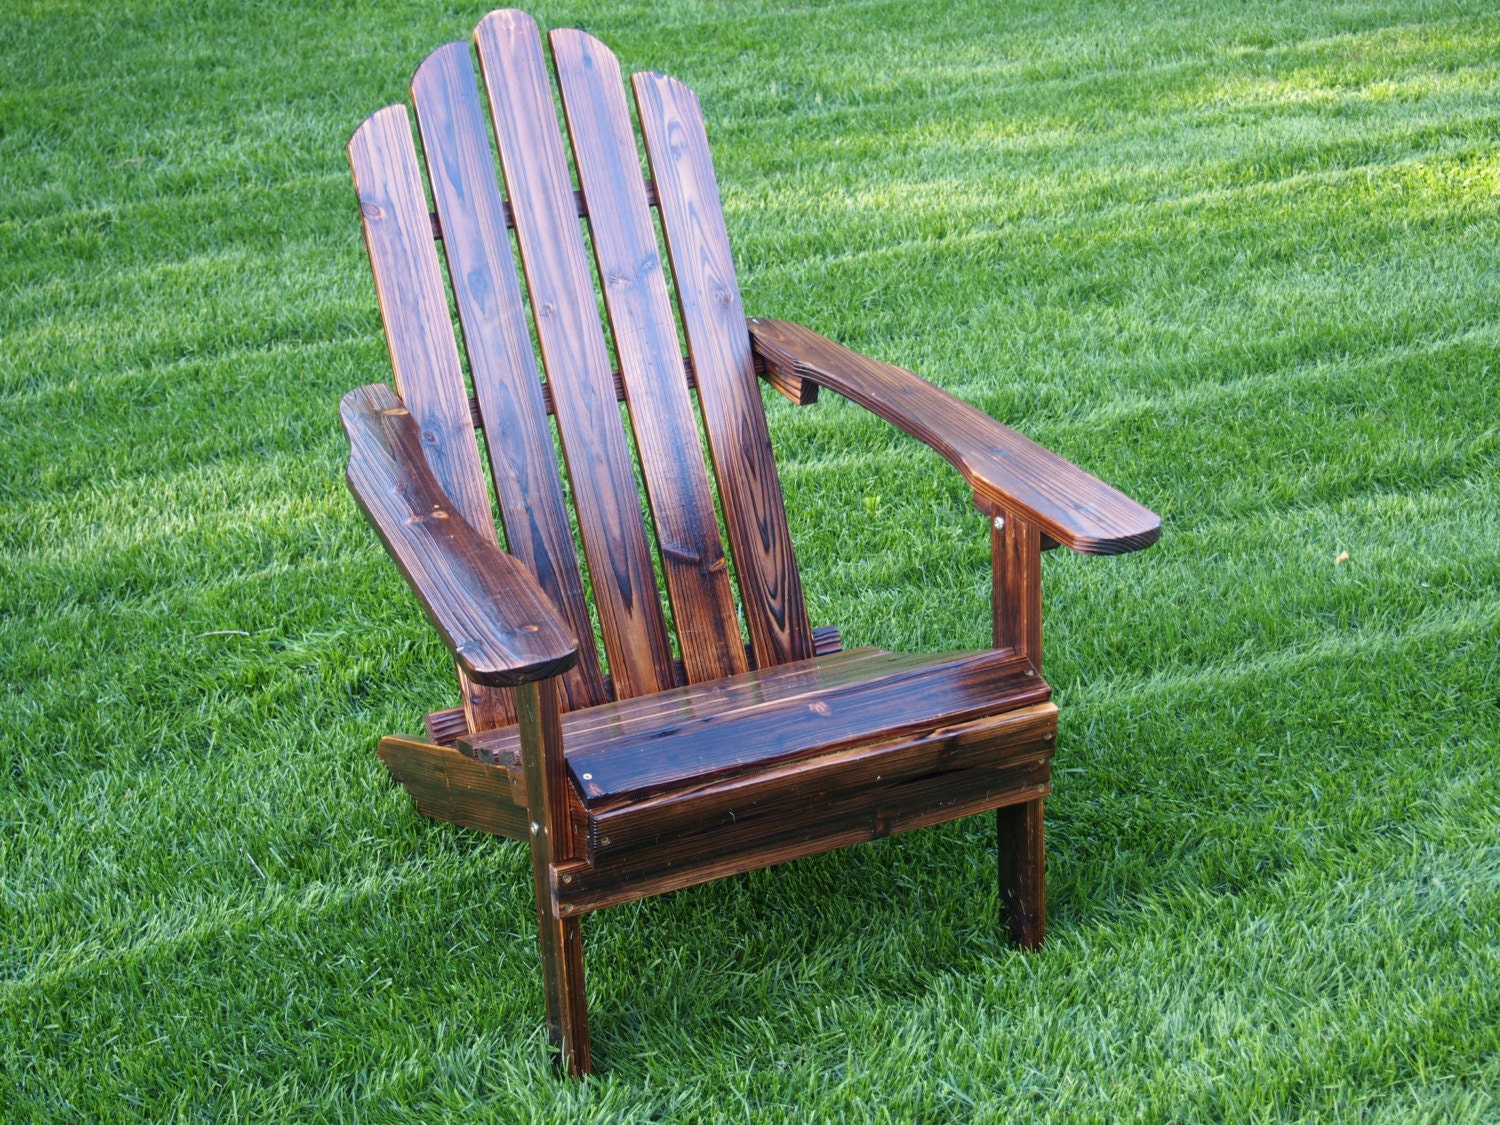 ON SALE NOW Wooden Adirondack Chair Dark by IndianSummerStore